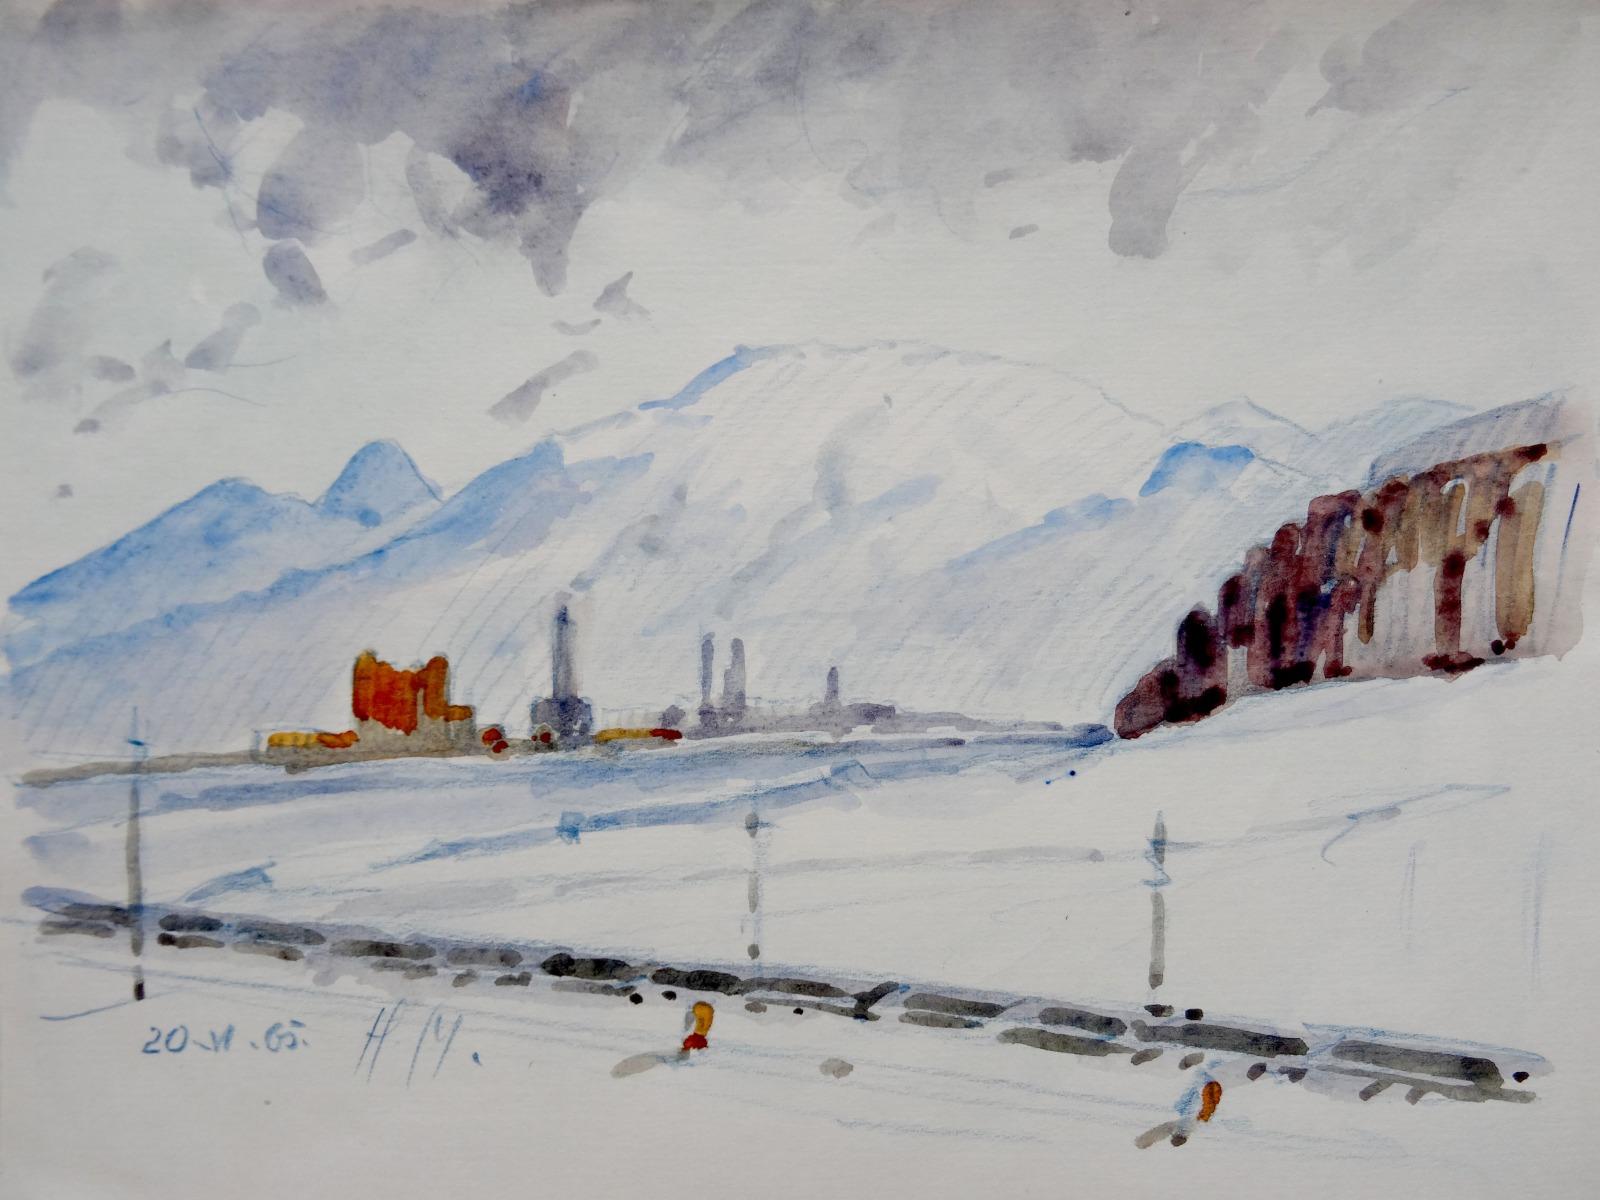 Herberts Mangolds Landscape Art – Winterlandschaft  Papier/Aquarell, 20.5x27,5 cm, 1965